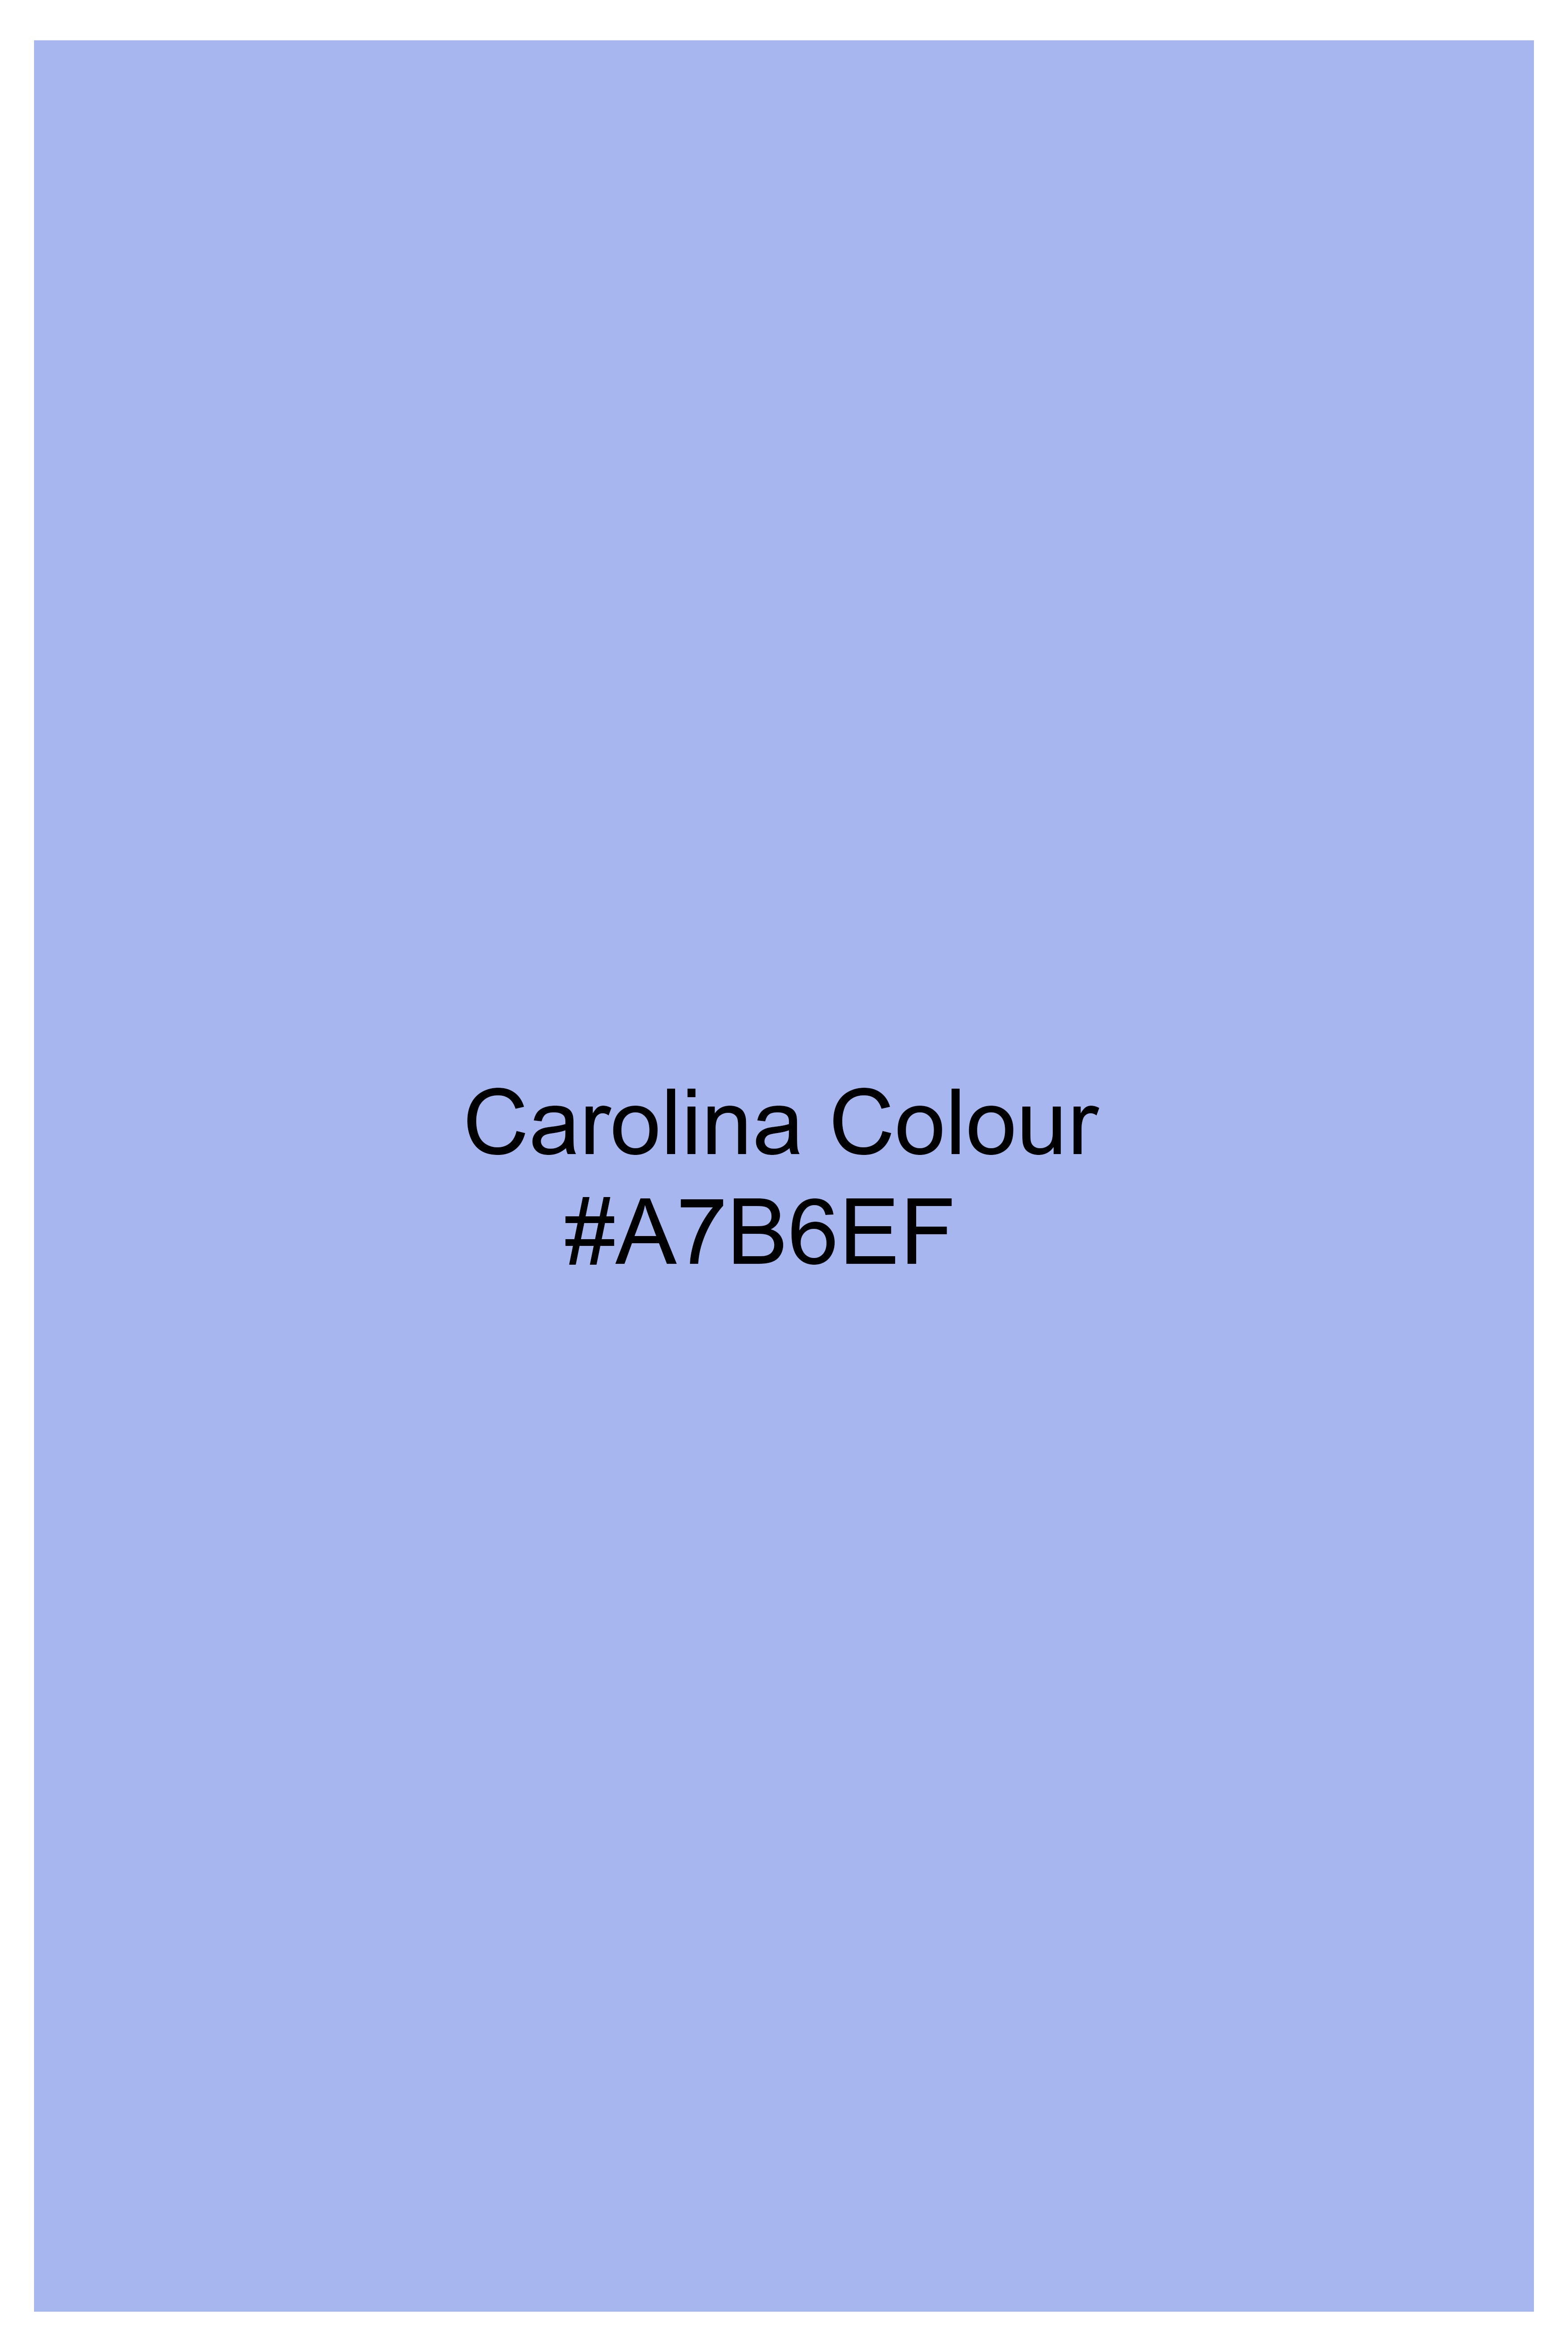 Carolina Blue Embroidered Luxurious Linen Designer Shirt 7945-BD-E216-38, 7945-BD-E216-H-38, 7945-BD-E216-39, 7945-BD-E216-H-39, 7945-BD-E216-40, 7945-BD-E216-H-40, 7945-BD-E216-42, 7945-BD-E216-H-42, 7945-BD-E216-44, 7945-BD-E216-H-44, 7945-BD-E216-46, 7945-BD-E216-H-46, 7945-BD-E216-48, 7945-BD-E216-H-48, 7945-BD-E216-50, 7945-BD-E216-H-50, 7945-BD-E216-52, 7945-BD-E216-H-52